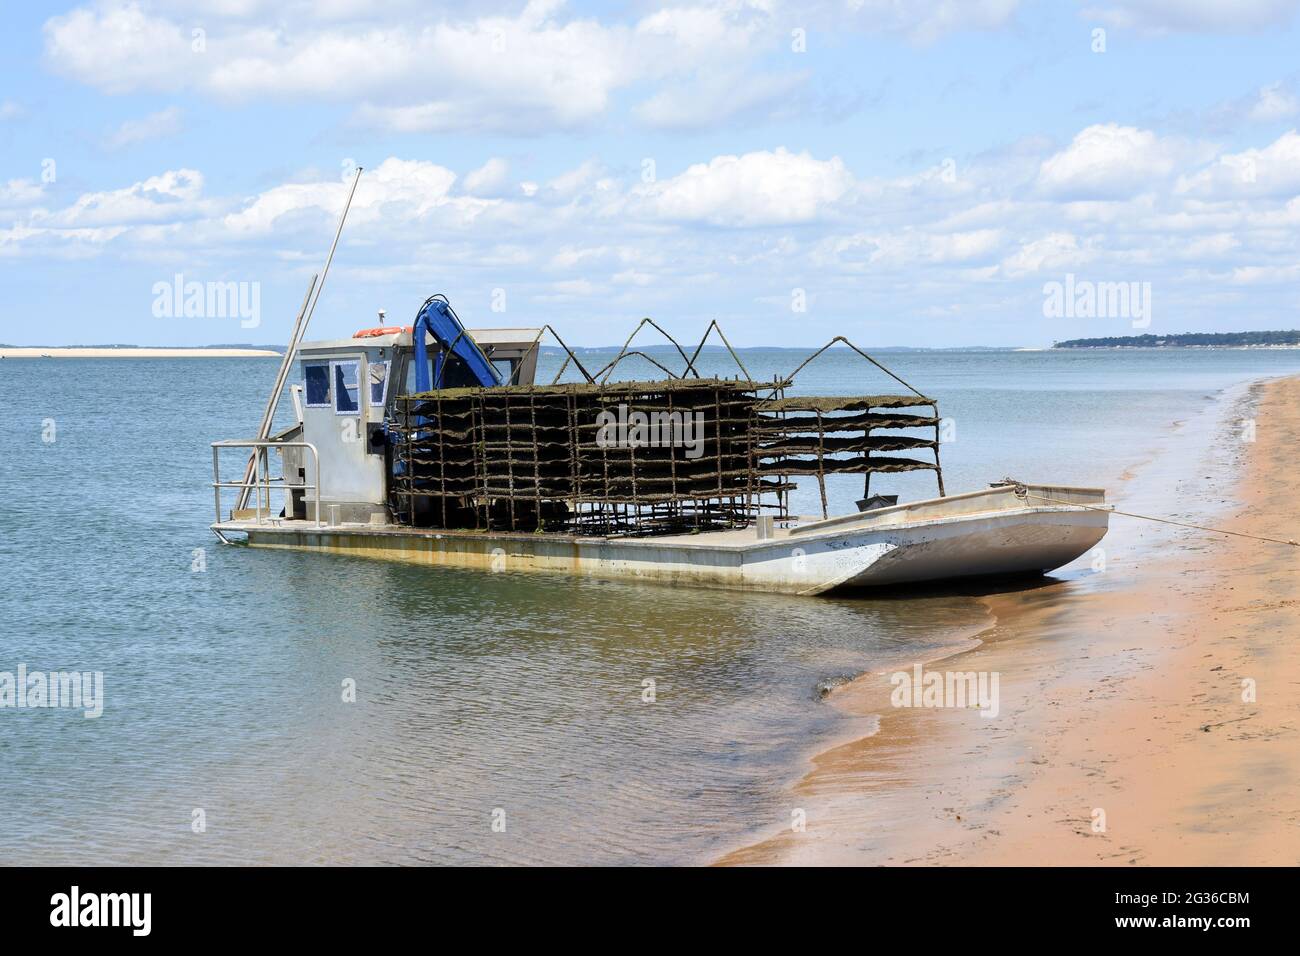 Francia, Aquitania, bassin d'Arcachon, chiatta di ostriche è una barca di alluminio che grazie alla bassa tiratura facilita l'accesso alla fattoria di ostriche secondo le maree. Foto Stock